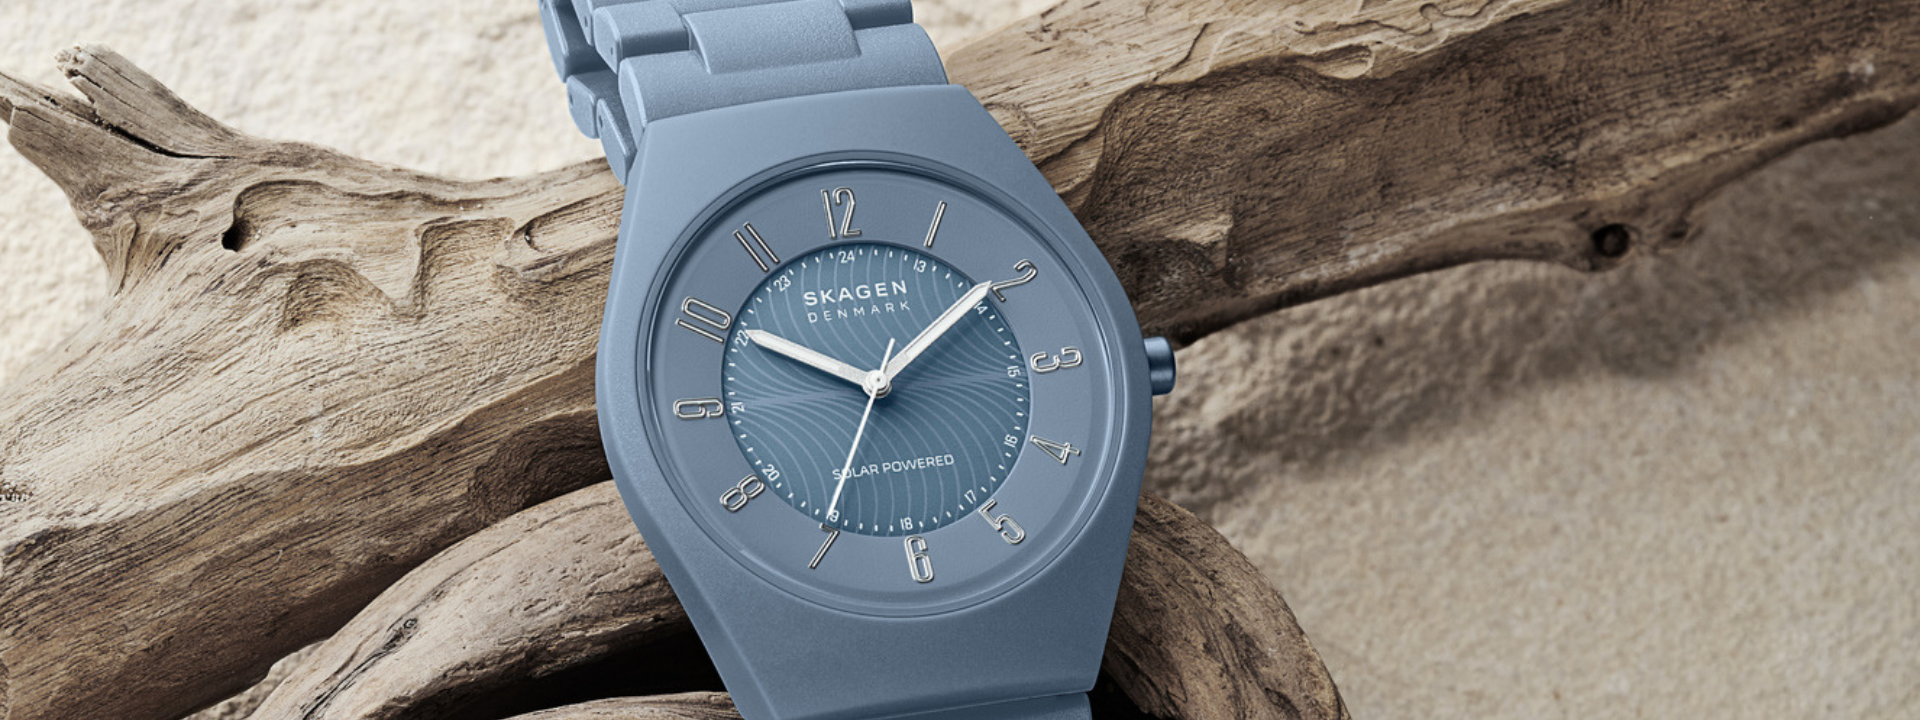 No momento você está vendo Skagen lança relógios com plástico retirado dos oceanos